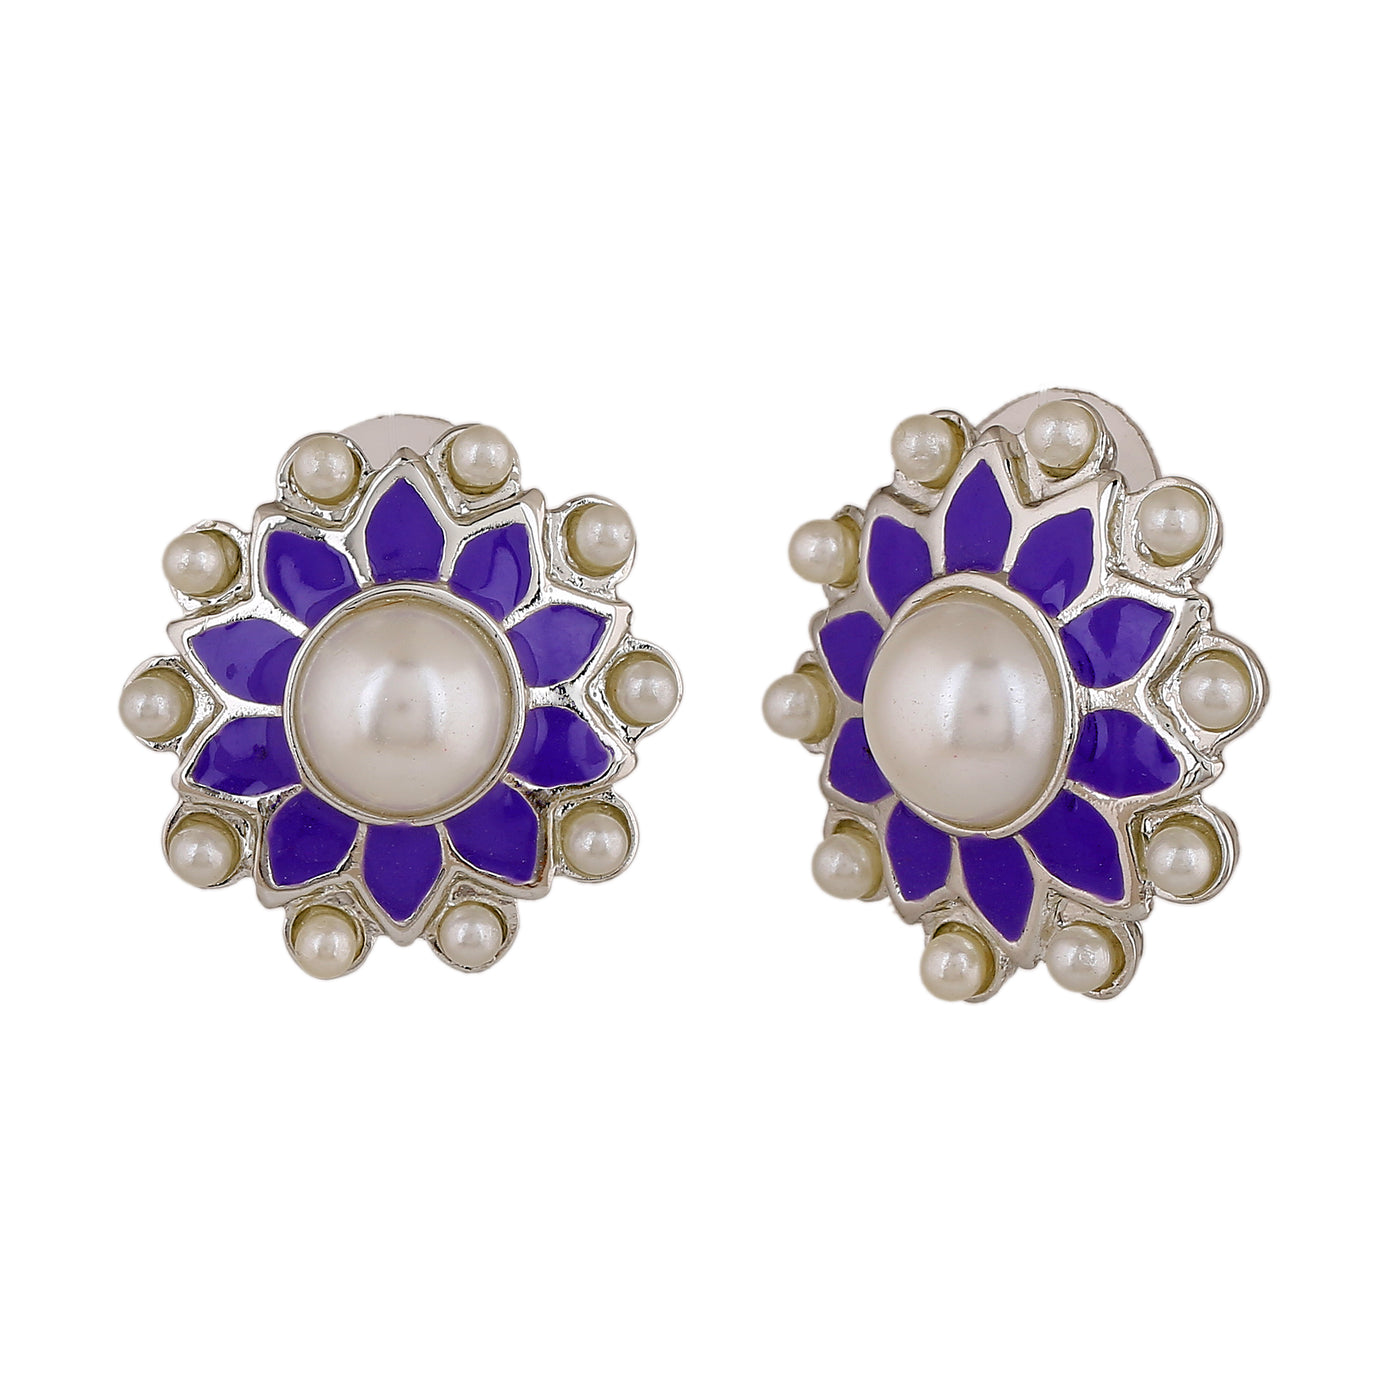 Estele Rhodium Plated Charming Meenakari Pearl Stud Earrings with Violet Enamel for Women